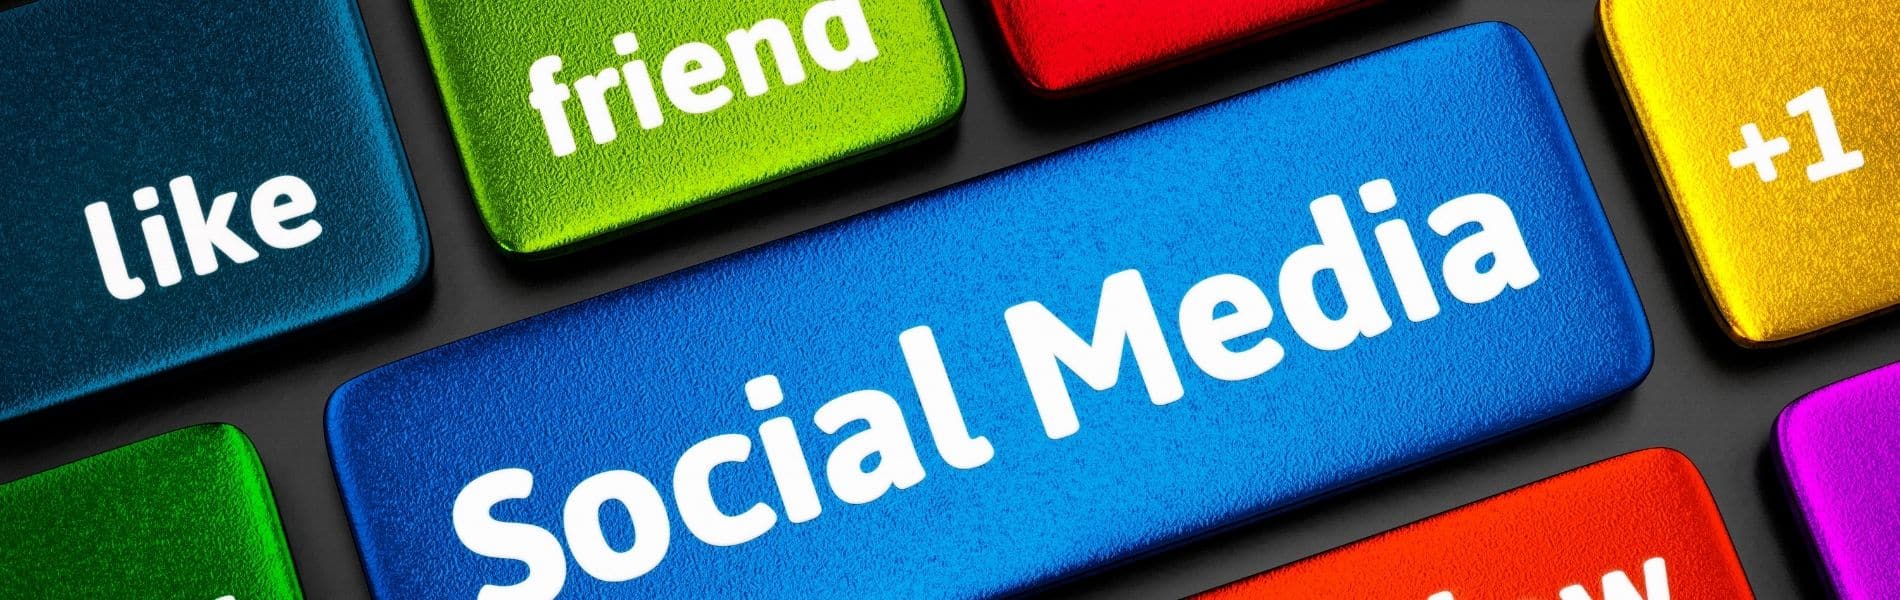 social media marketing strategies 2021